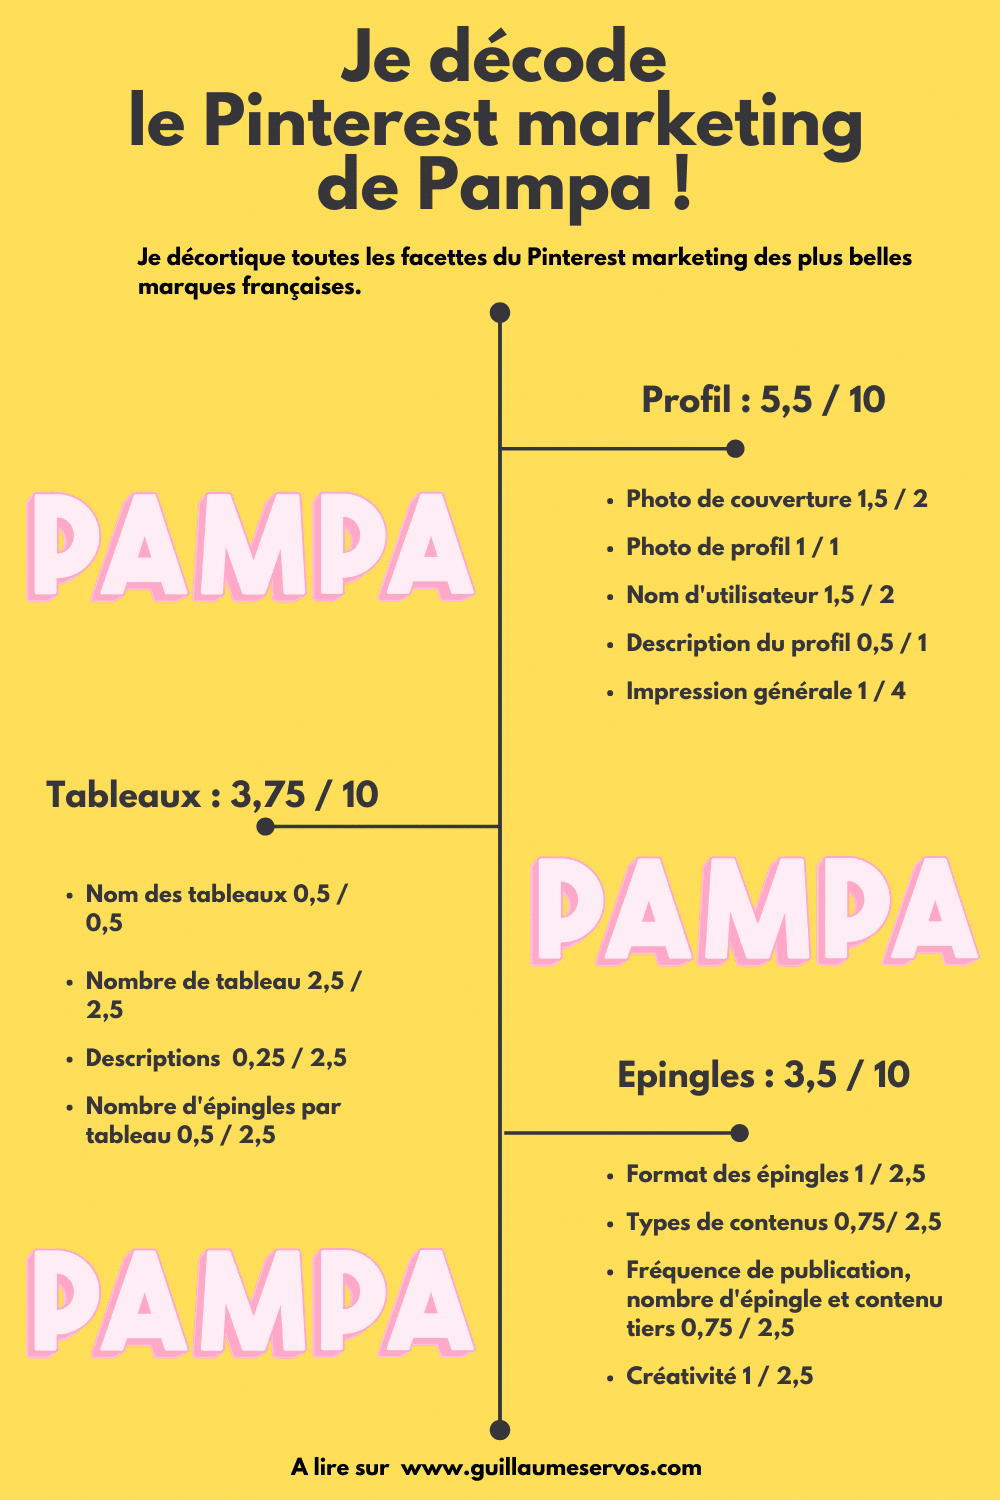 Infographie je décode le marketing Pinterest de Pampa